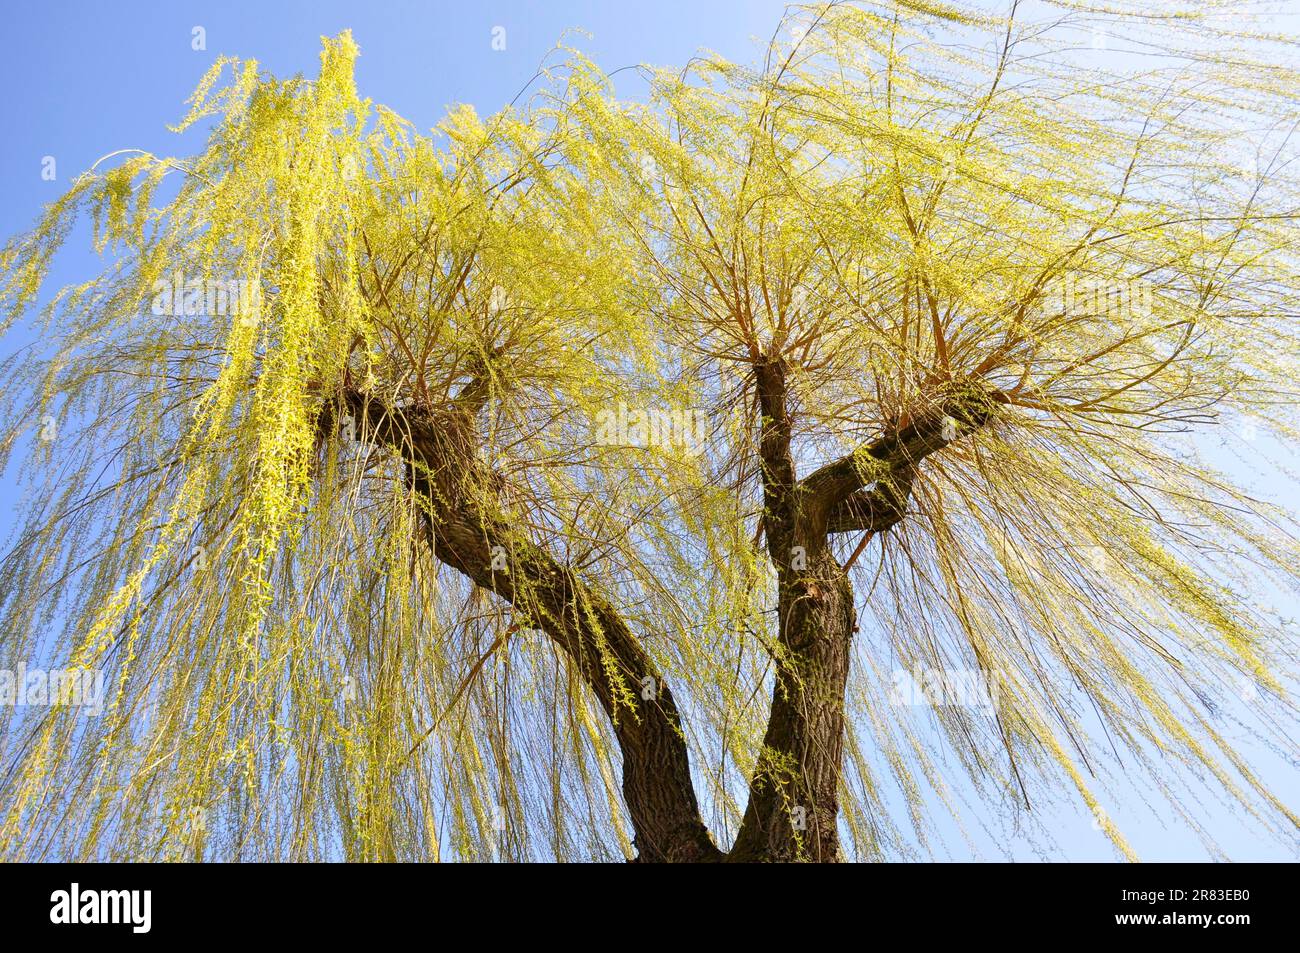 Pousses fraîches de saule pleurant (Salix babylonica) au printemps, vent fort, saule pleurant Banque D'Images